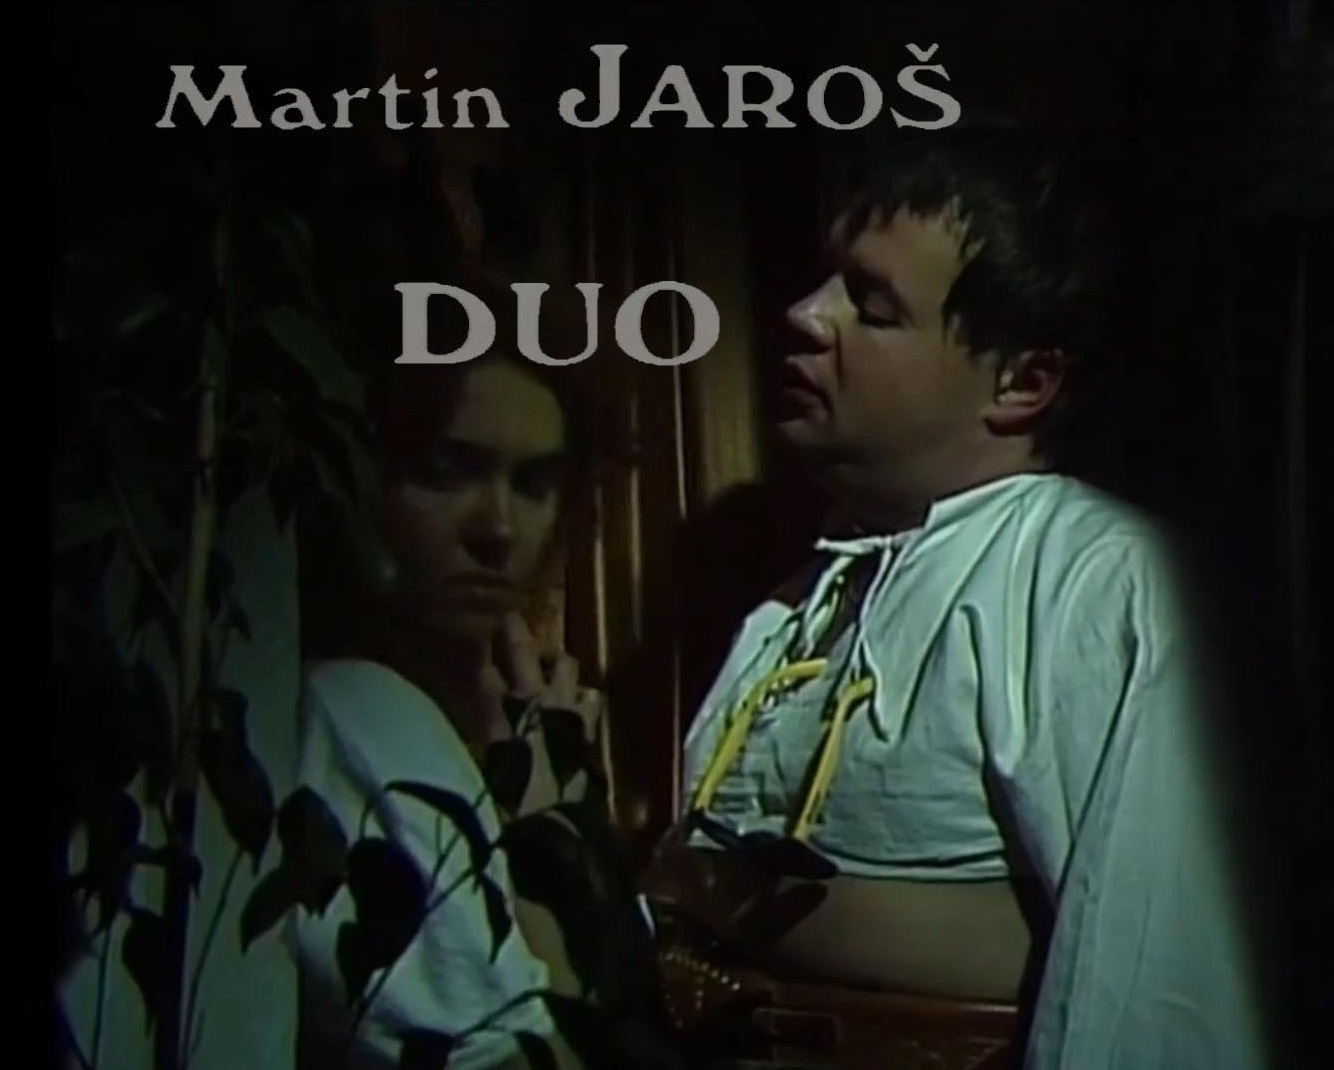 Stiahni si Filmy CZ/SK dabing Duo (1990)(SK)[TvRip]